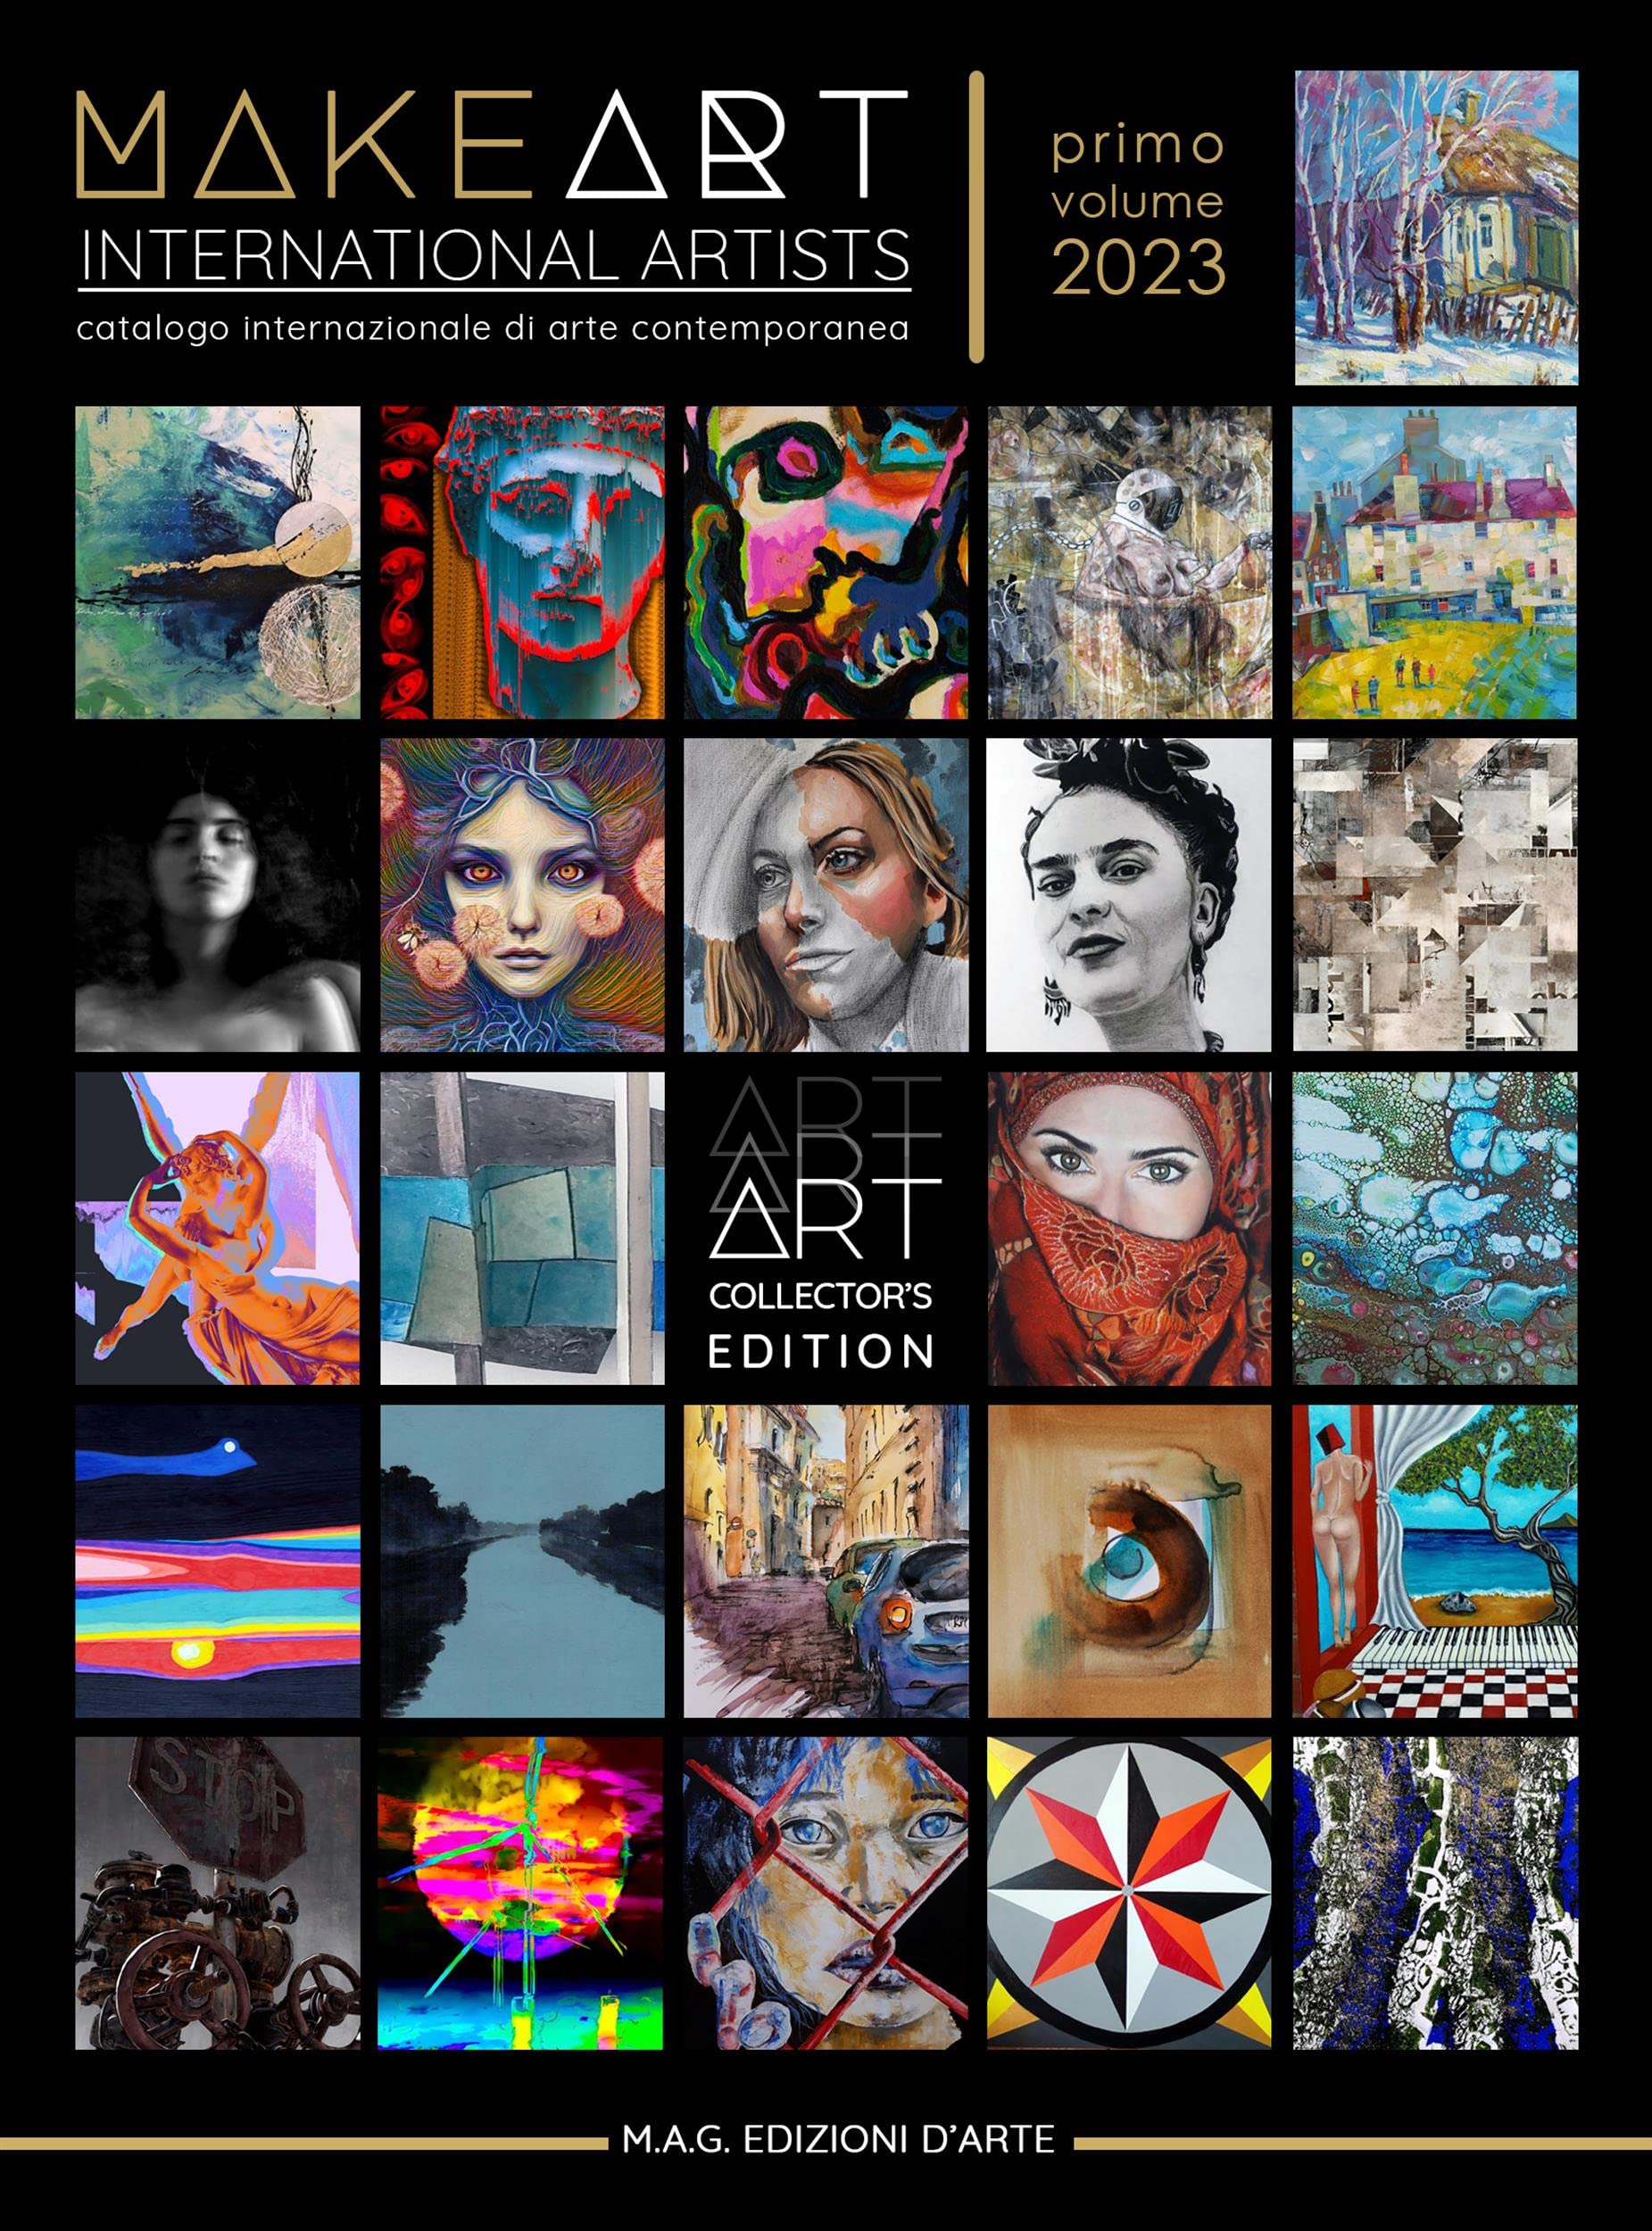 Make Art - International Artists primo volume 2023: Catalogo internazionale di arte contemporanea (Italian Edition)